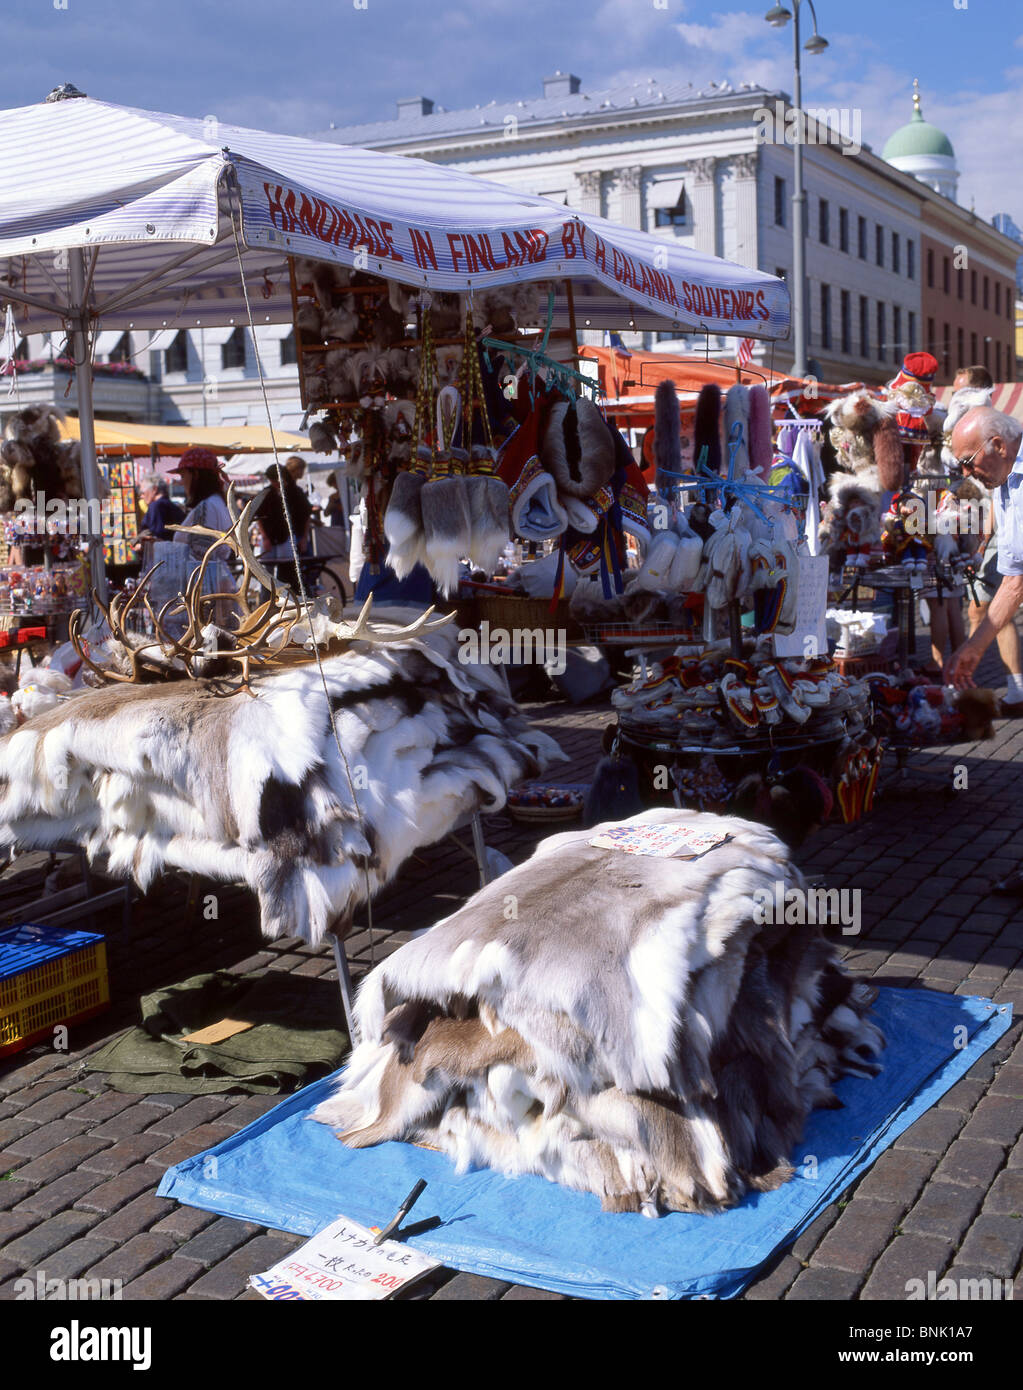 Pelo di animali pellicce per la vendita nel mercato all'aperto, Kauppatori  Market Square, Helsinki, regione di Uusimaa, la Repubblica di Finlandia  Foto stock - Alamy